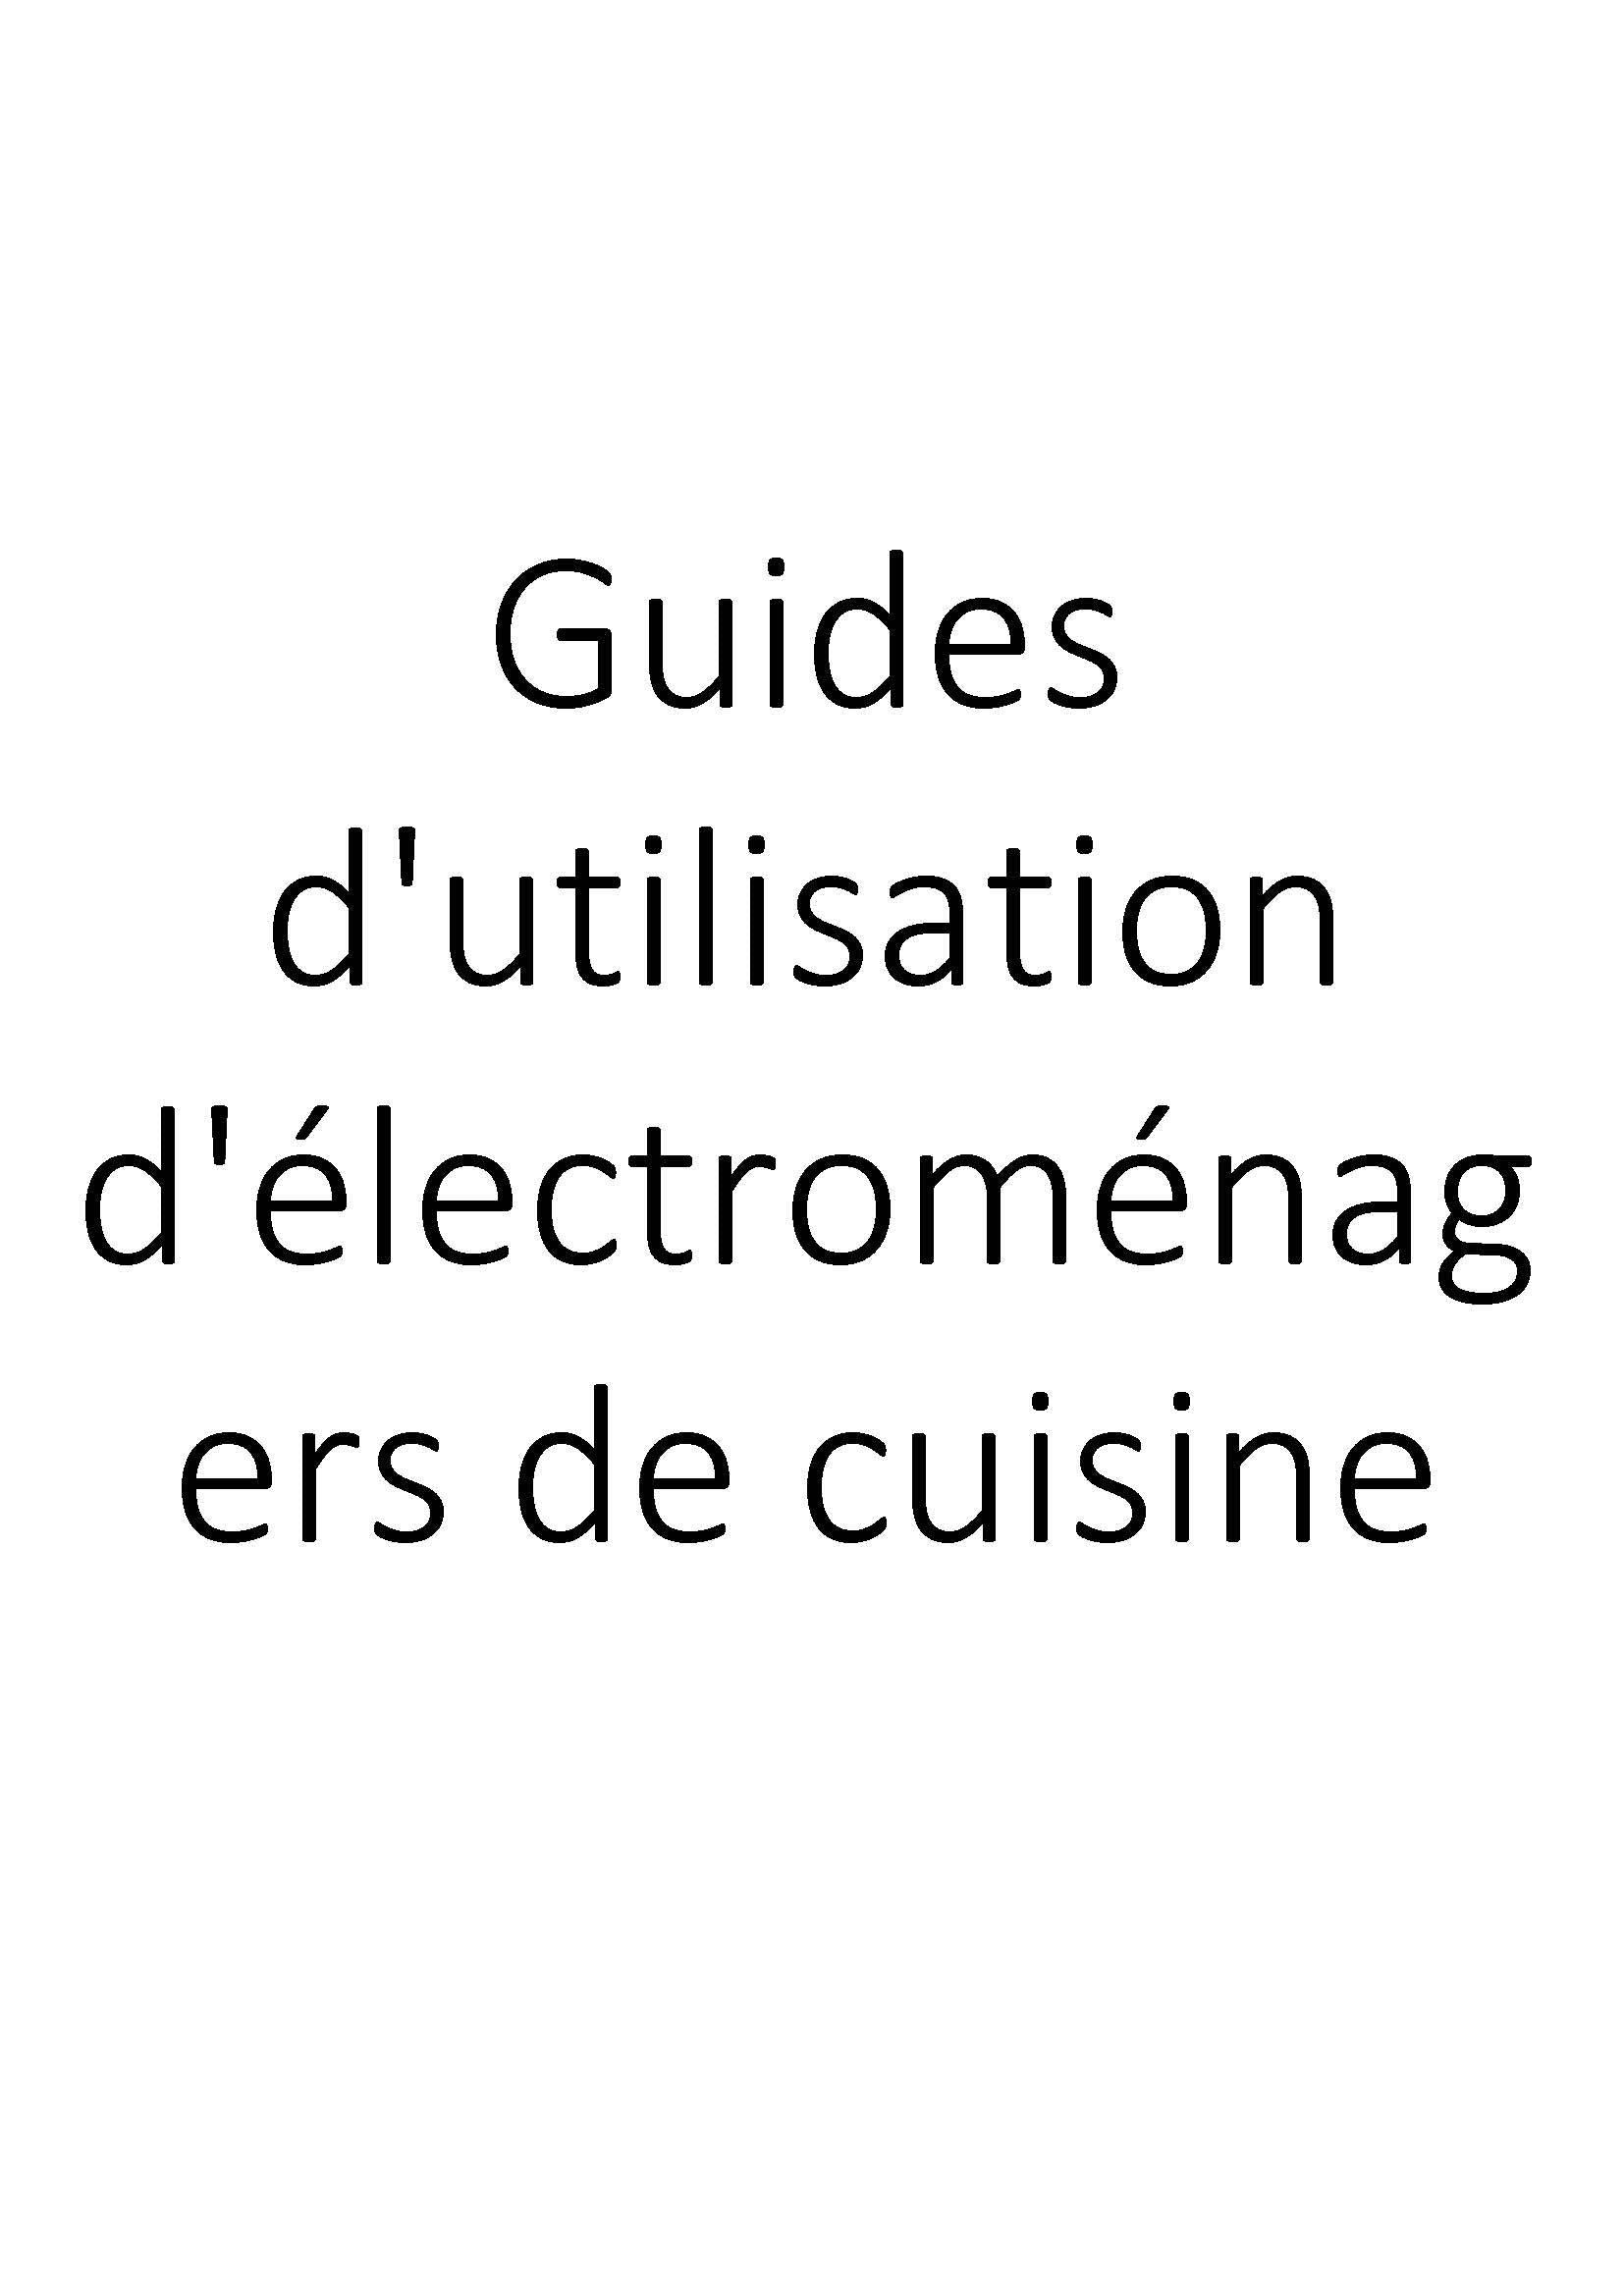 Guides d'utilisation d'électroménagers de cuisine clicktofournisseur.com